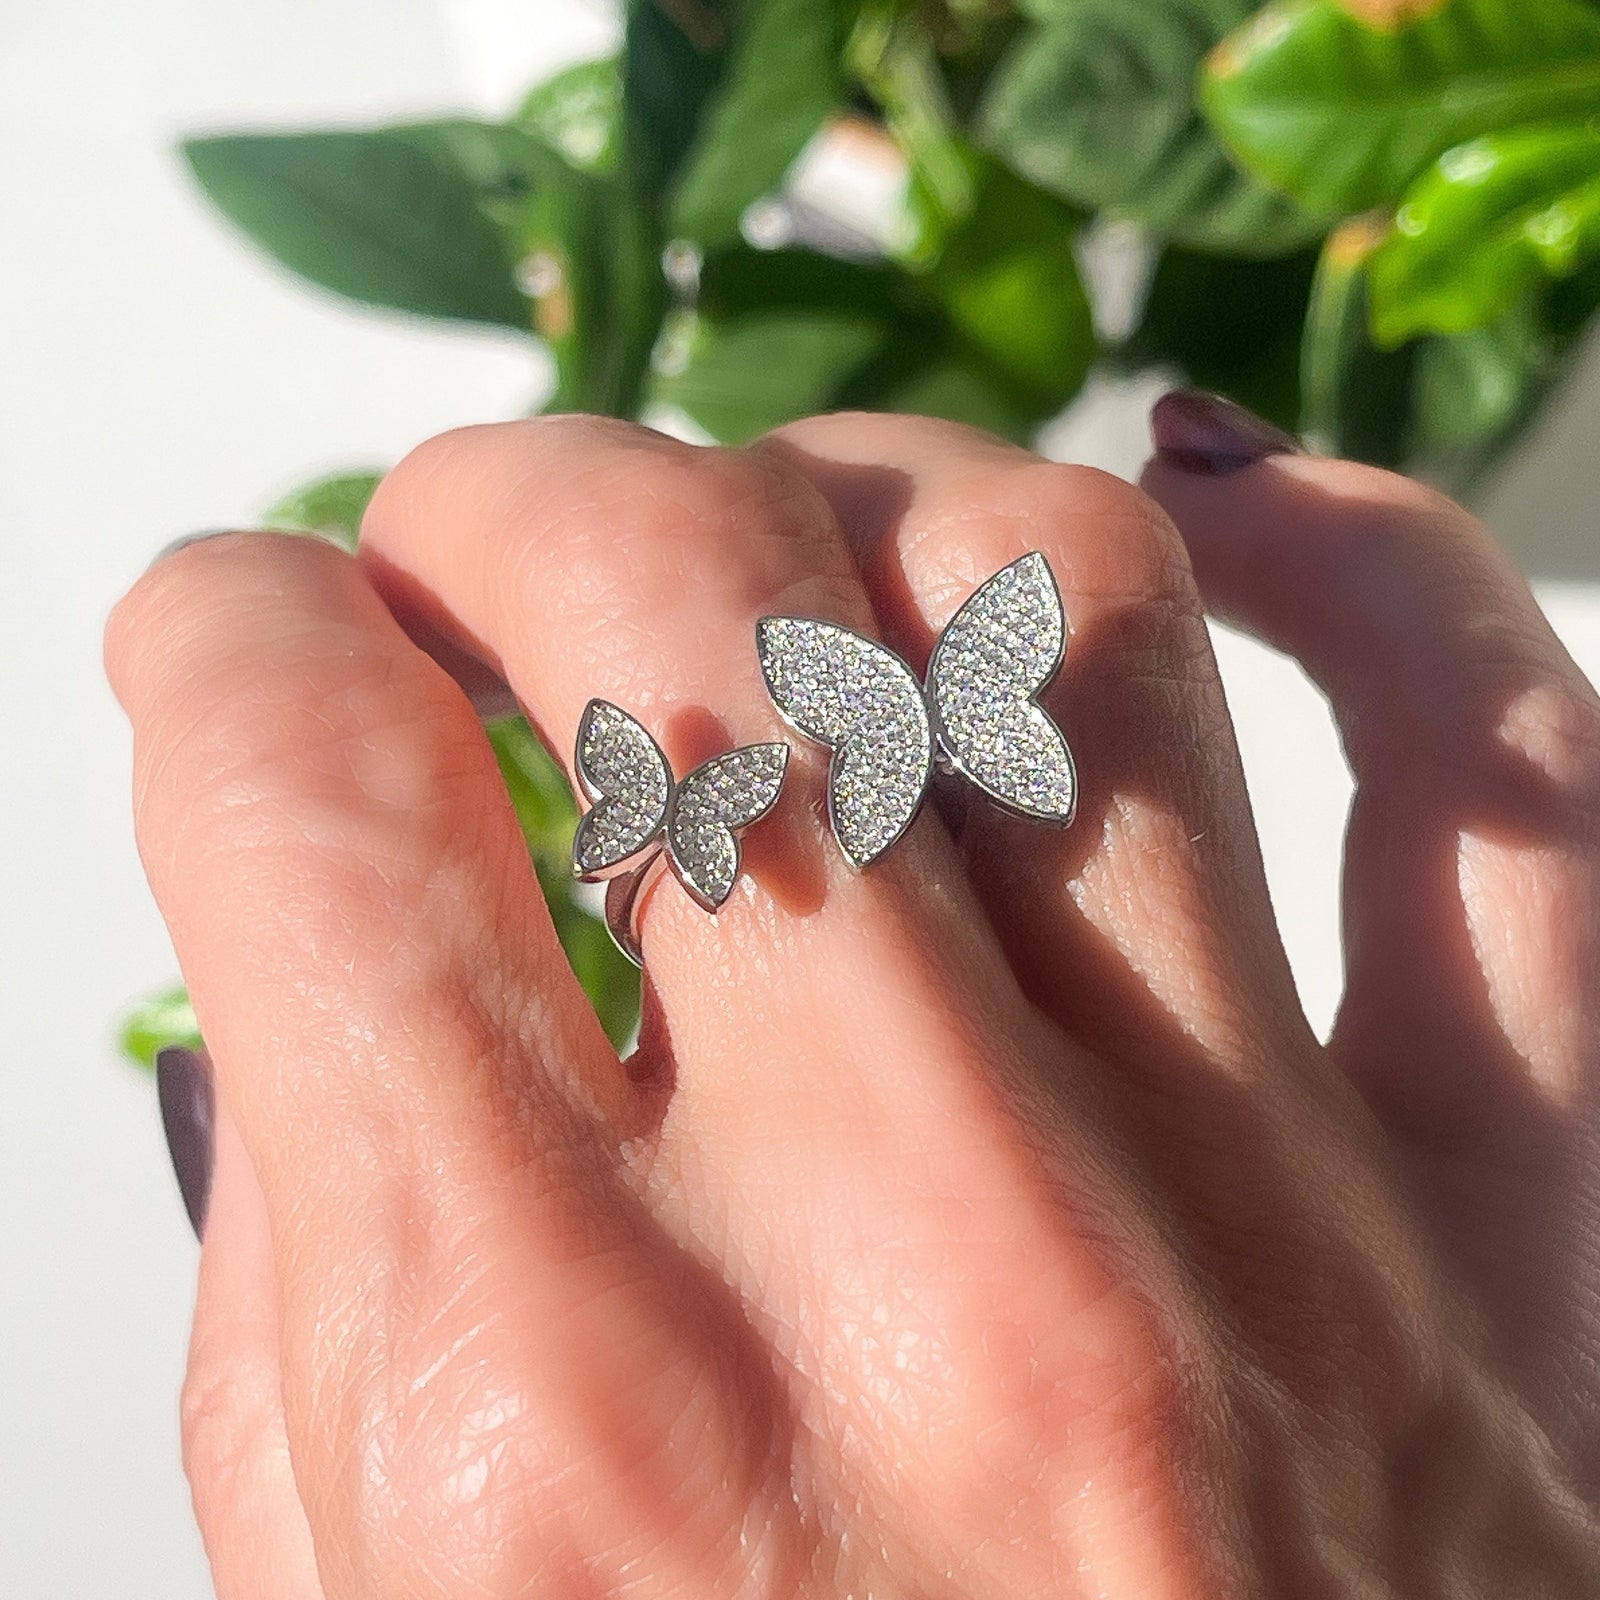 hildie & Jo 2pk Silver Metal Butterfly Earring Backs - Earring Findings - Beads & Jewelry Making